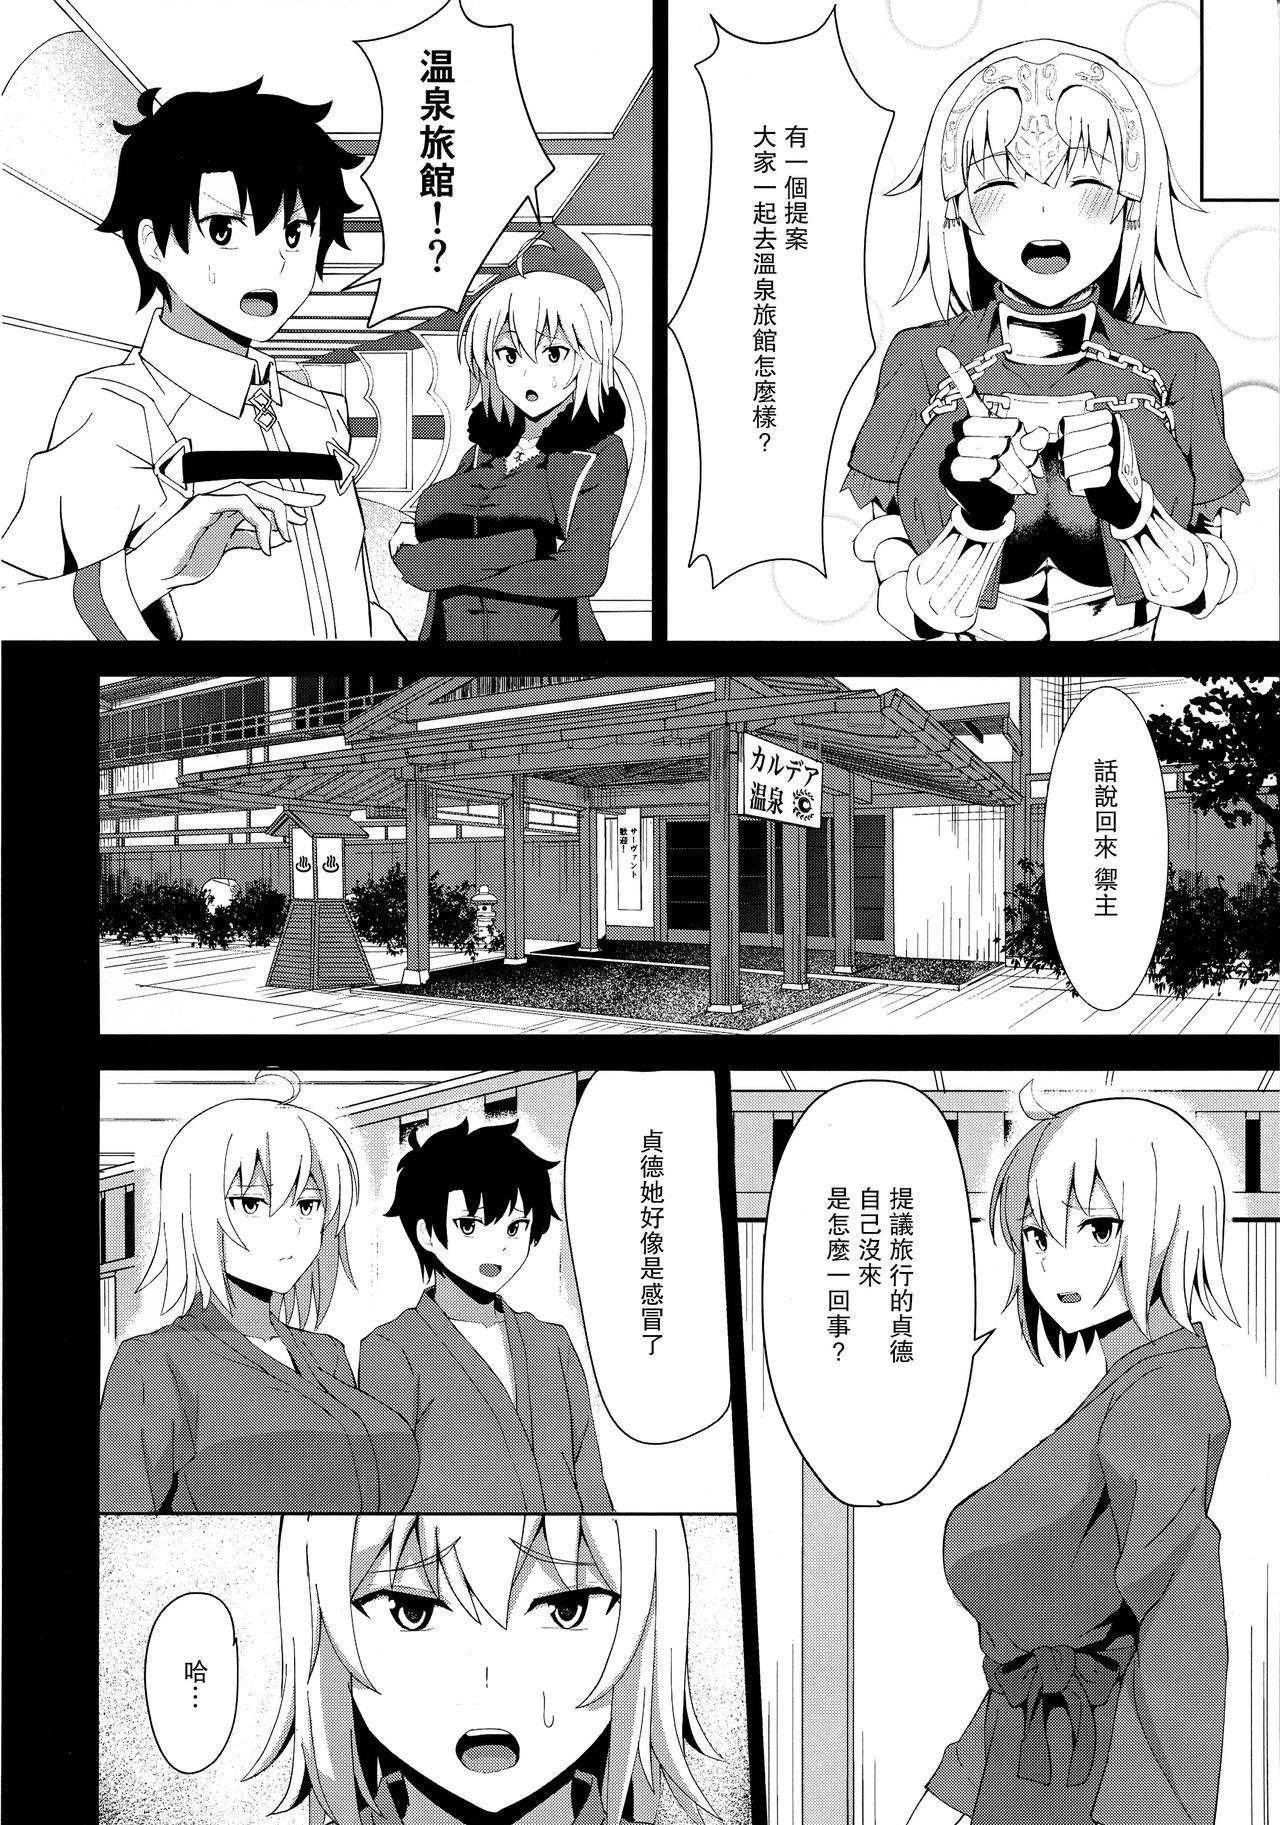 8teenxxx Kihonteki ni Icha Love desu. - Fate grand order Women Sucking Dick - Page 7